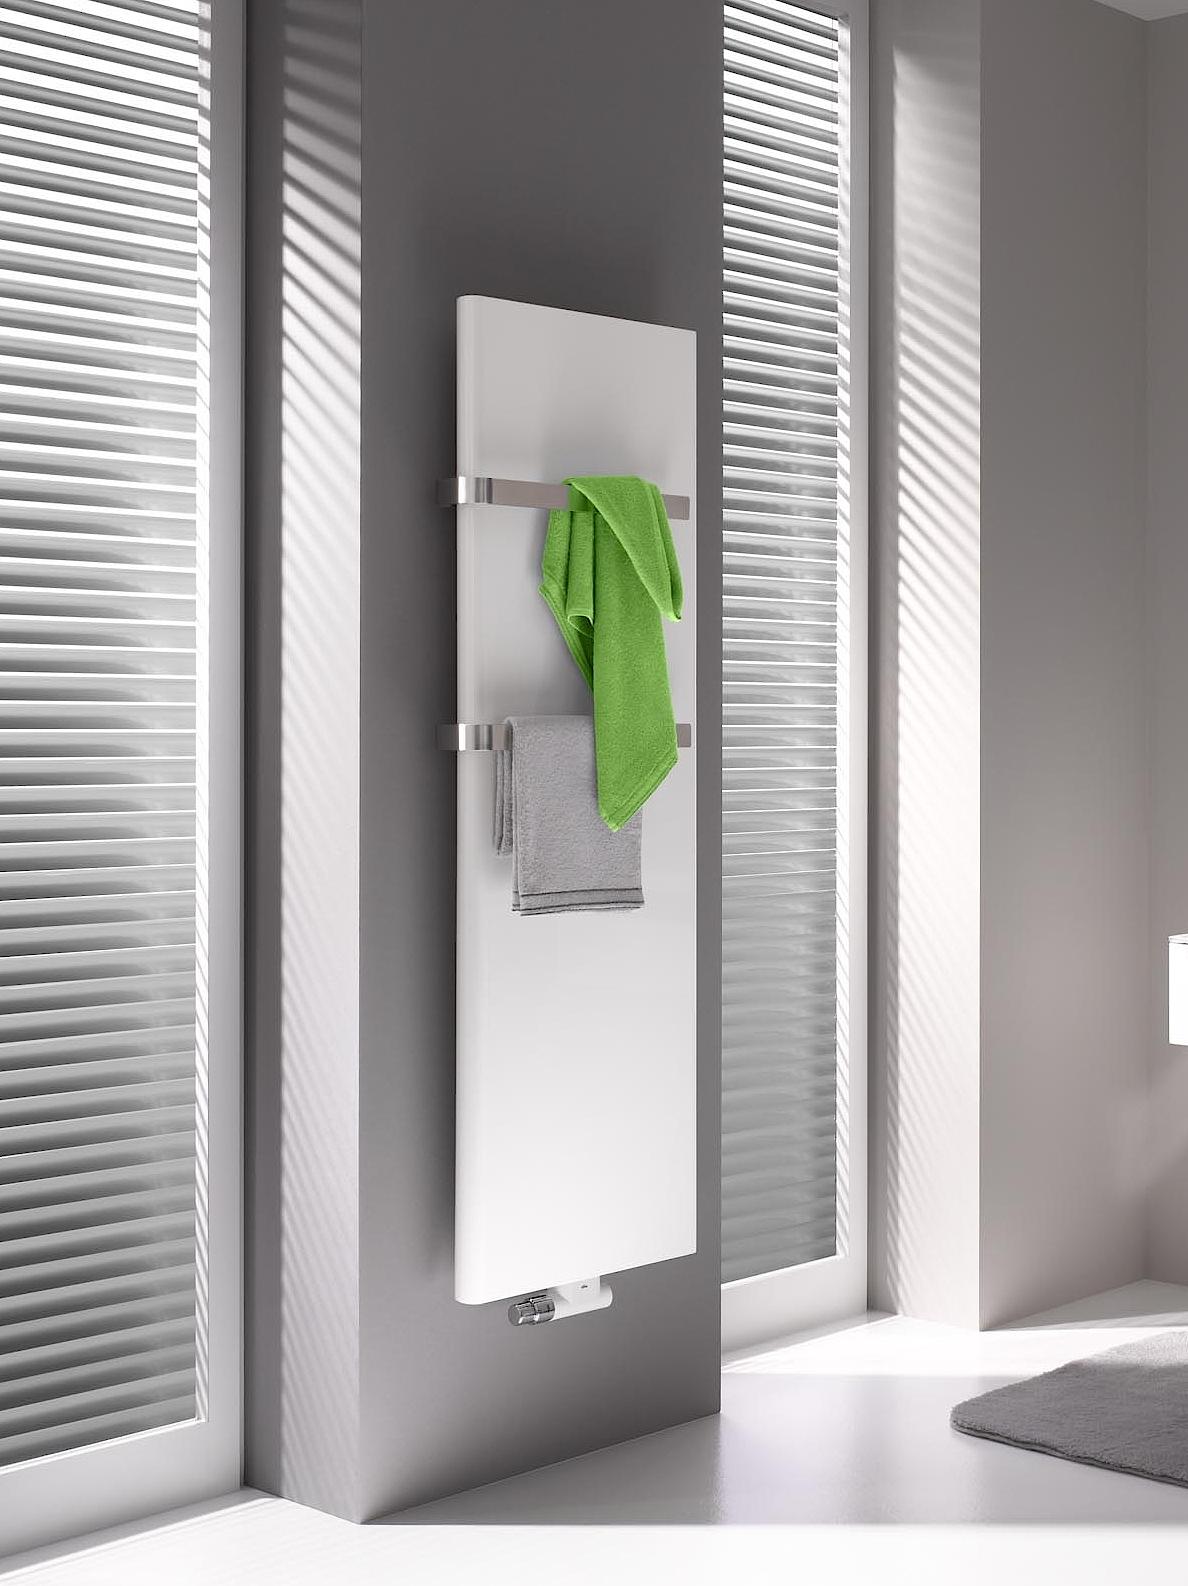 Grzejniki dekoracyjne i łazienkowe Kermi Pateo dzięki wyjątkowej technologii x2 są wzorowe pod względem mocy i efektywności energetycznej.